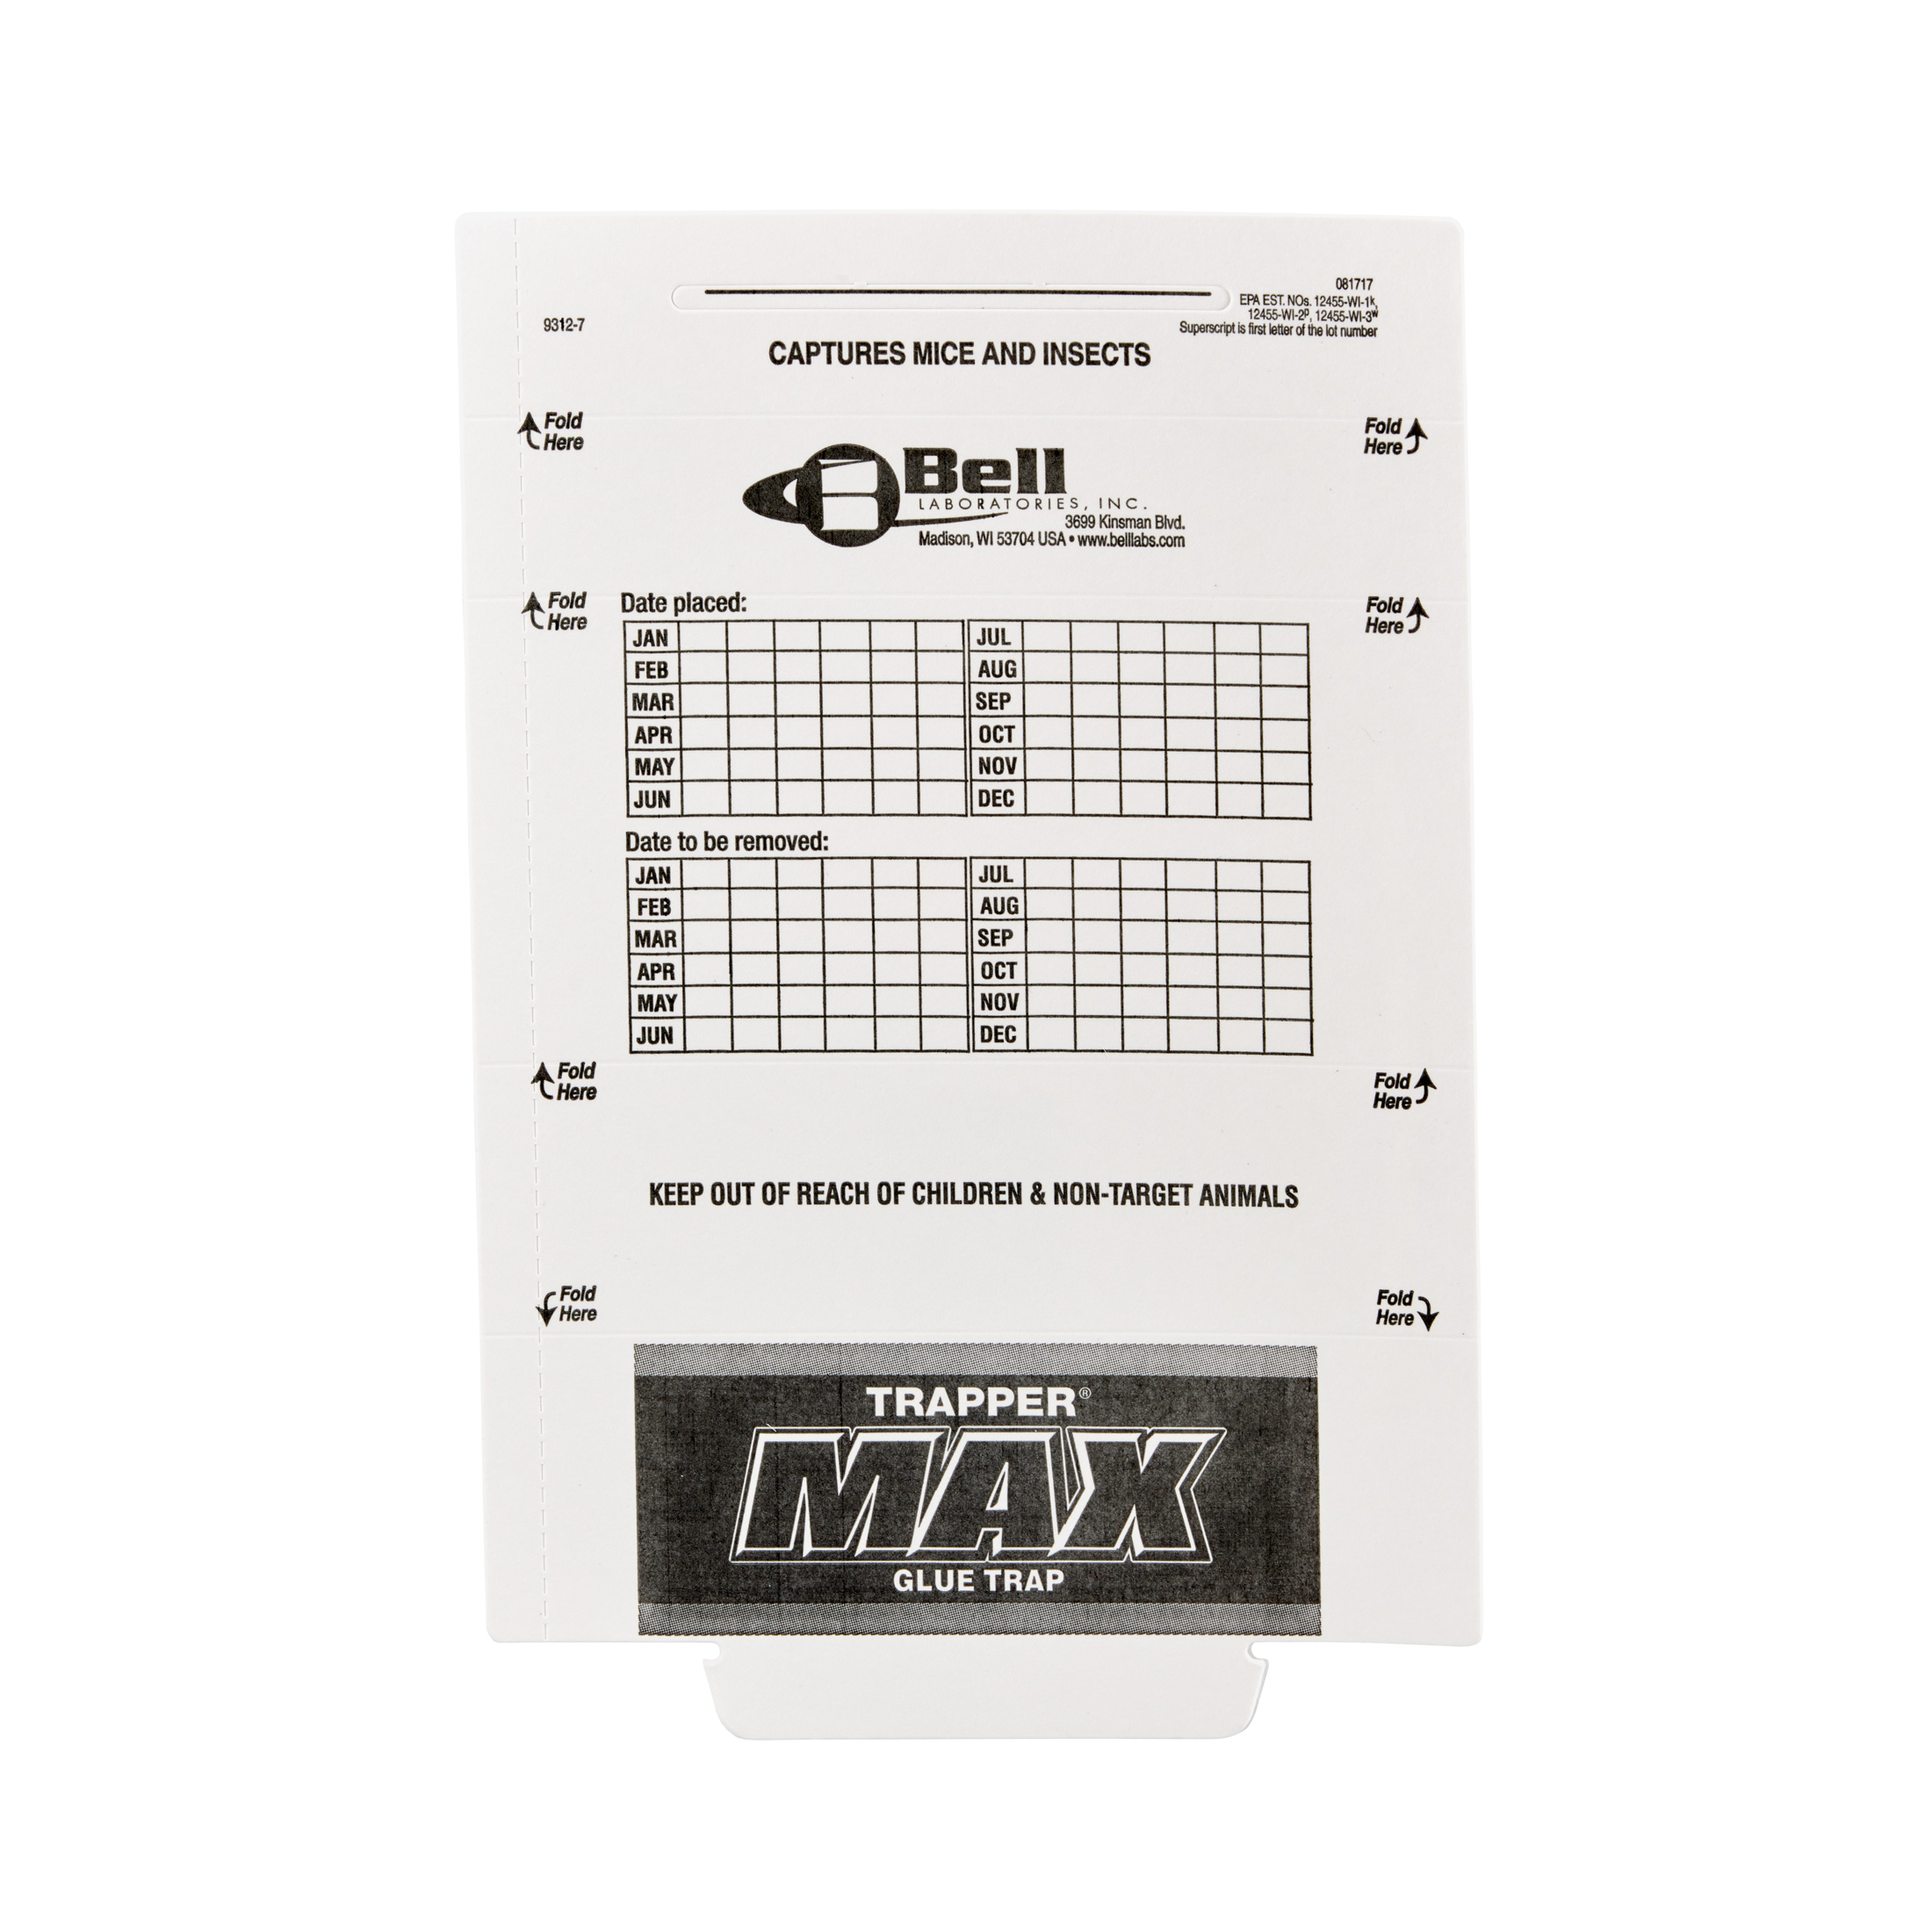 Trapper Max Glue Board for Mice - Phoenix Environmental Design Inc.